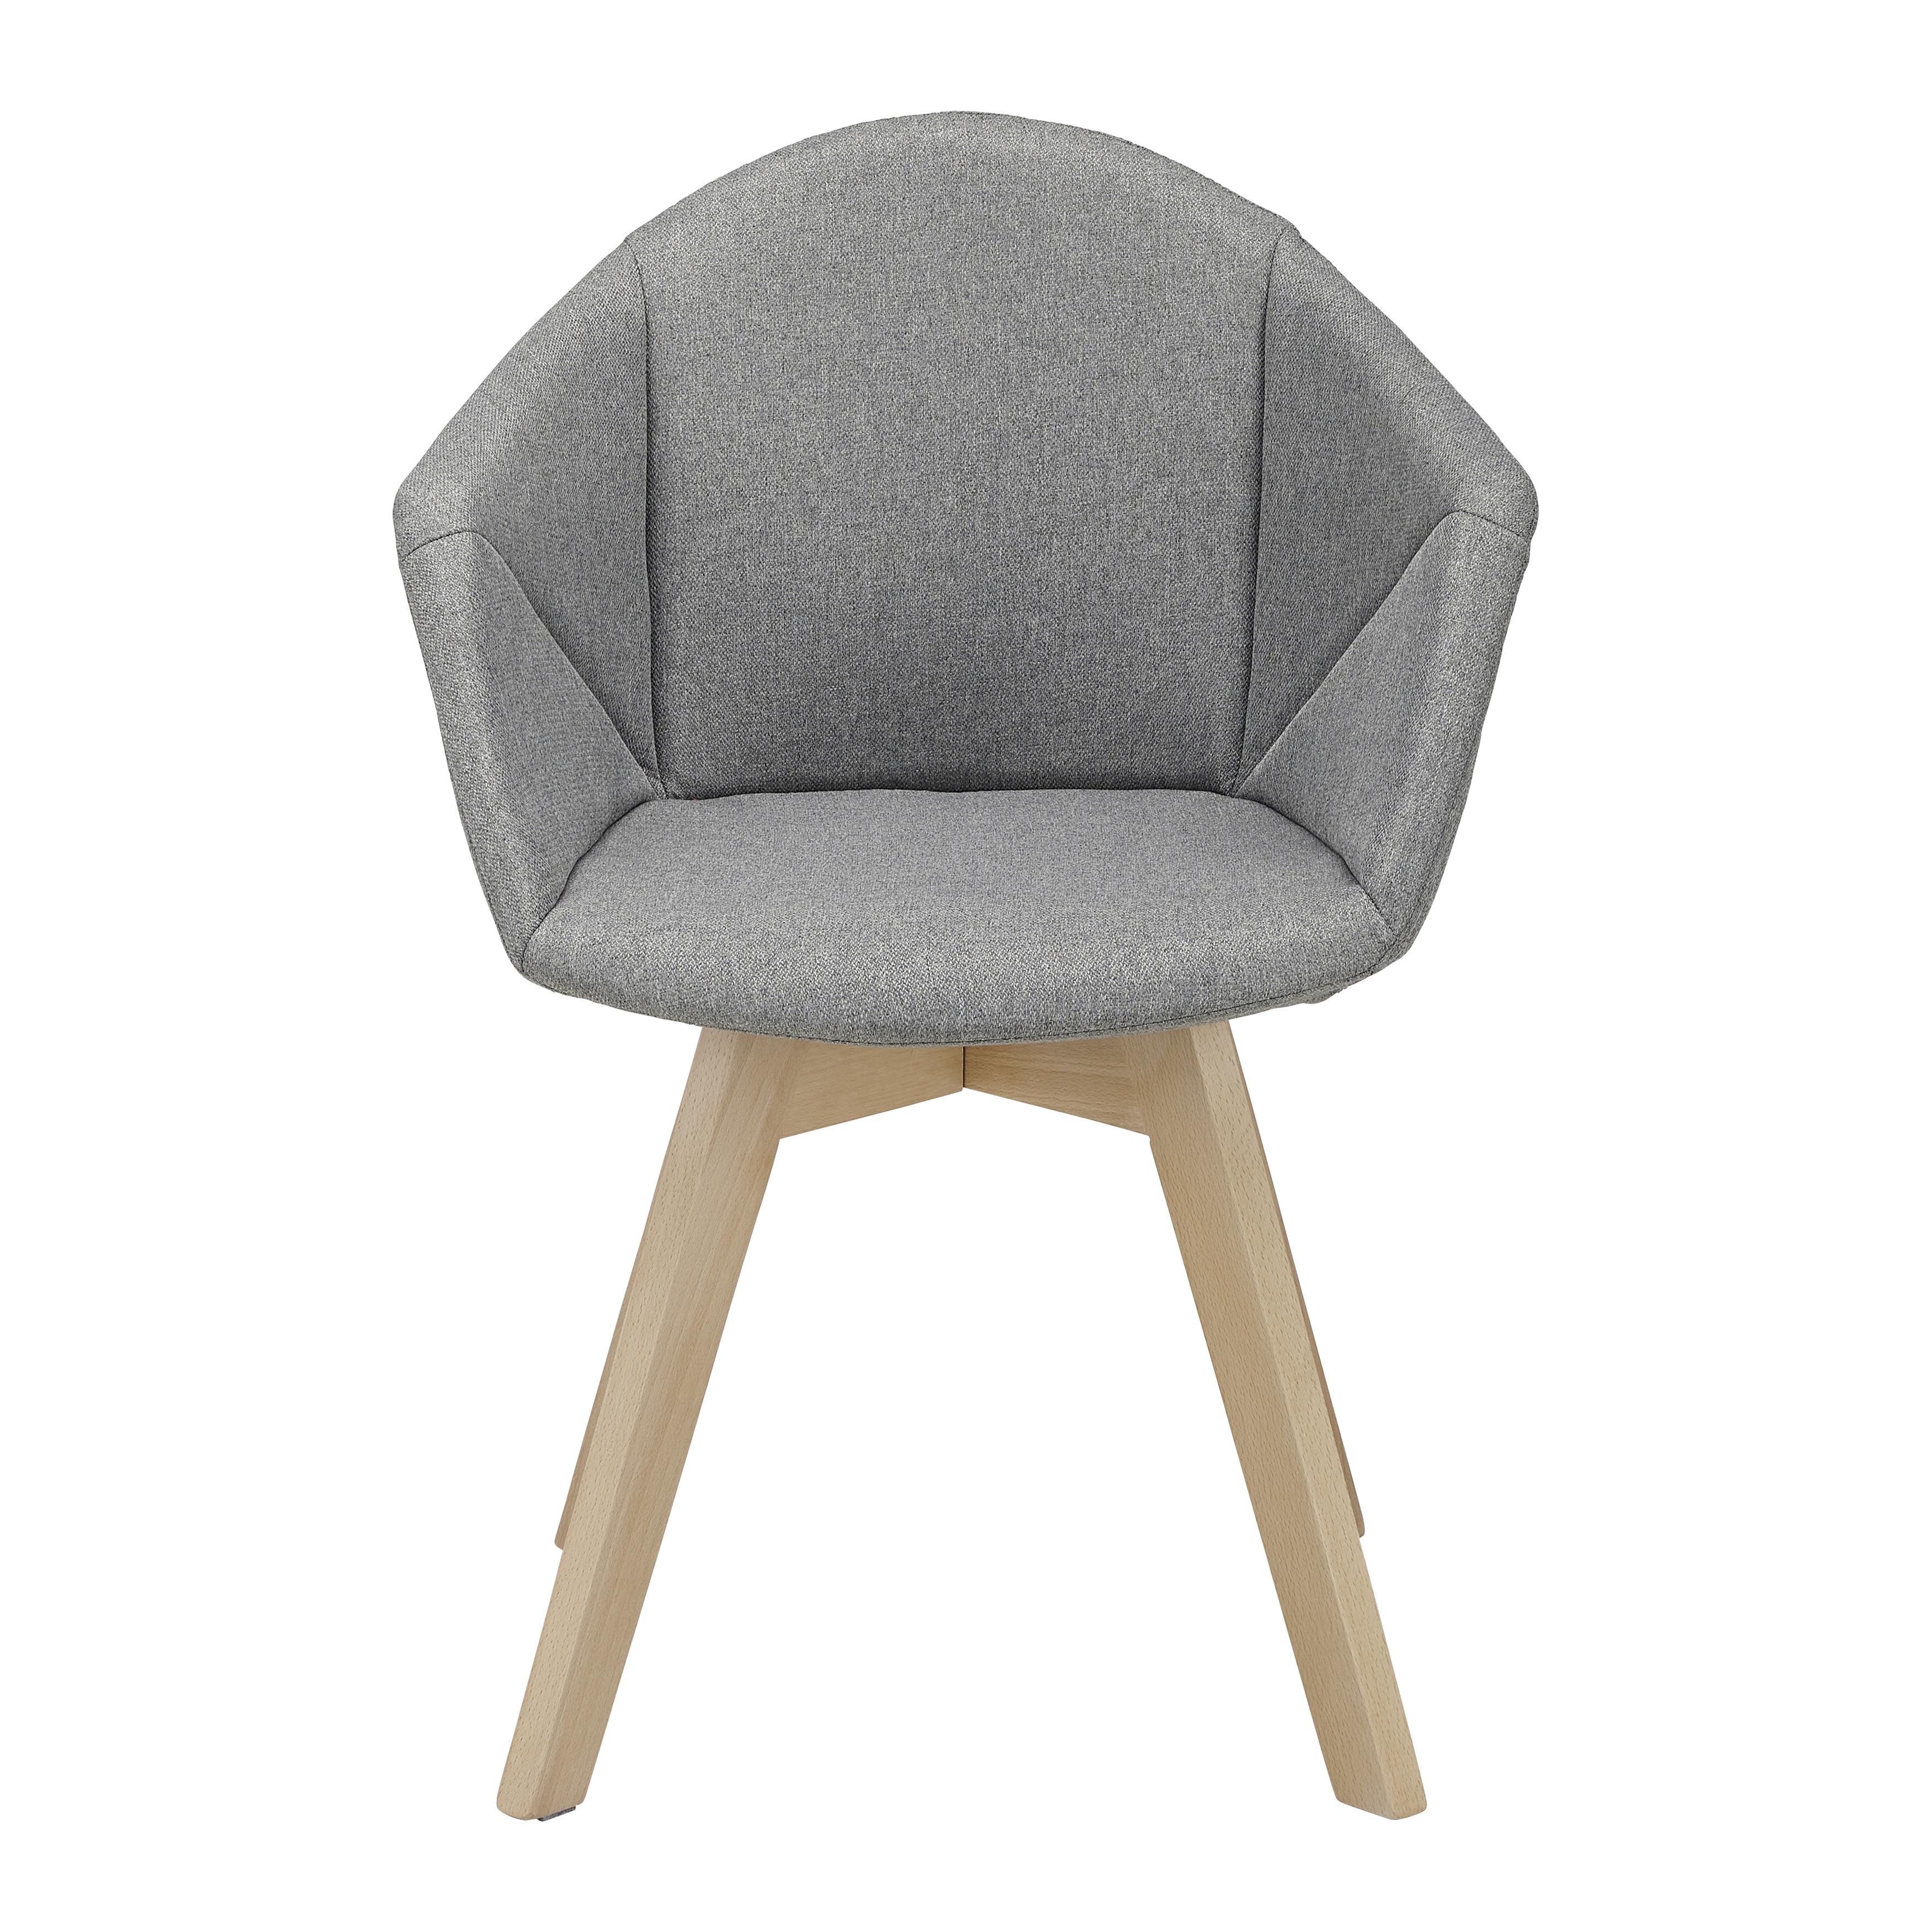 Jídelní Židle Alicia - šedá/barvy buku, Moderní, dřevo/textil (60/81/56,5cm) - Bessagi Home